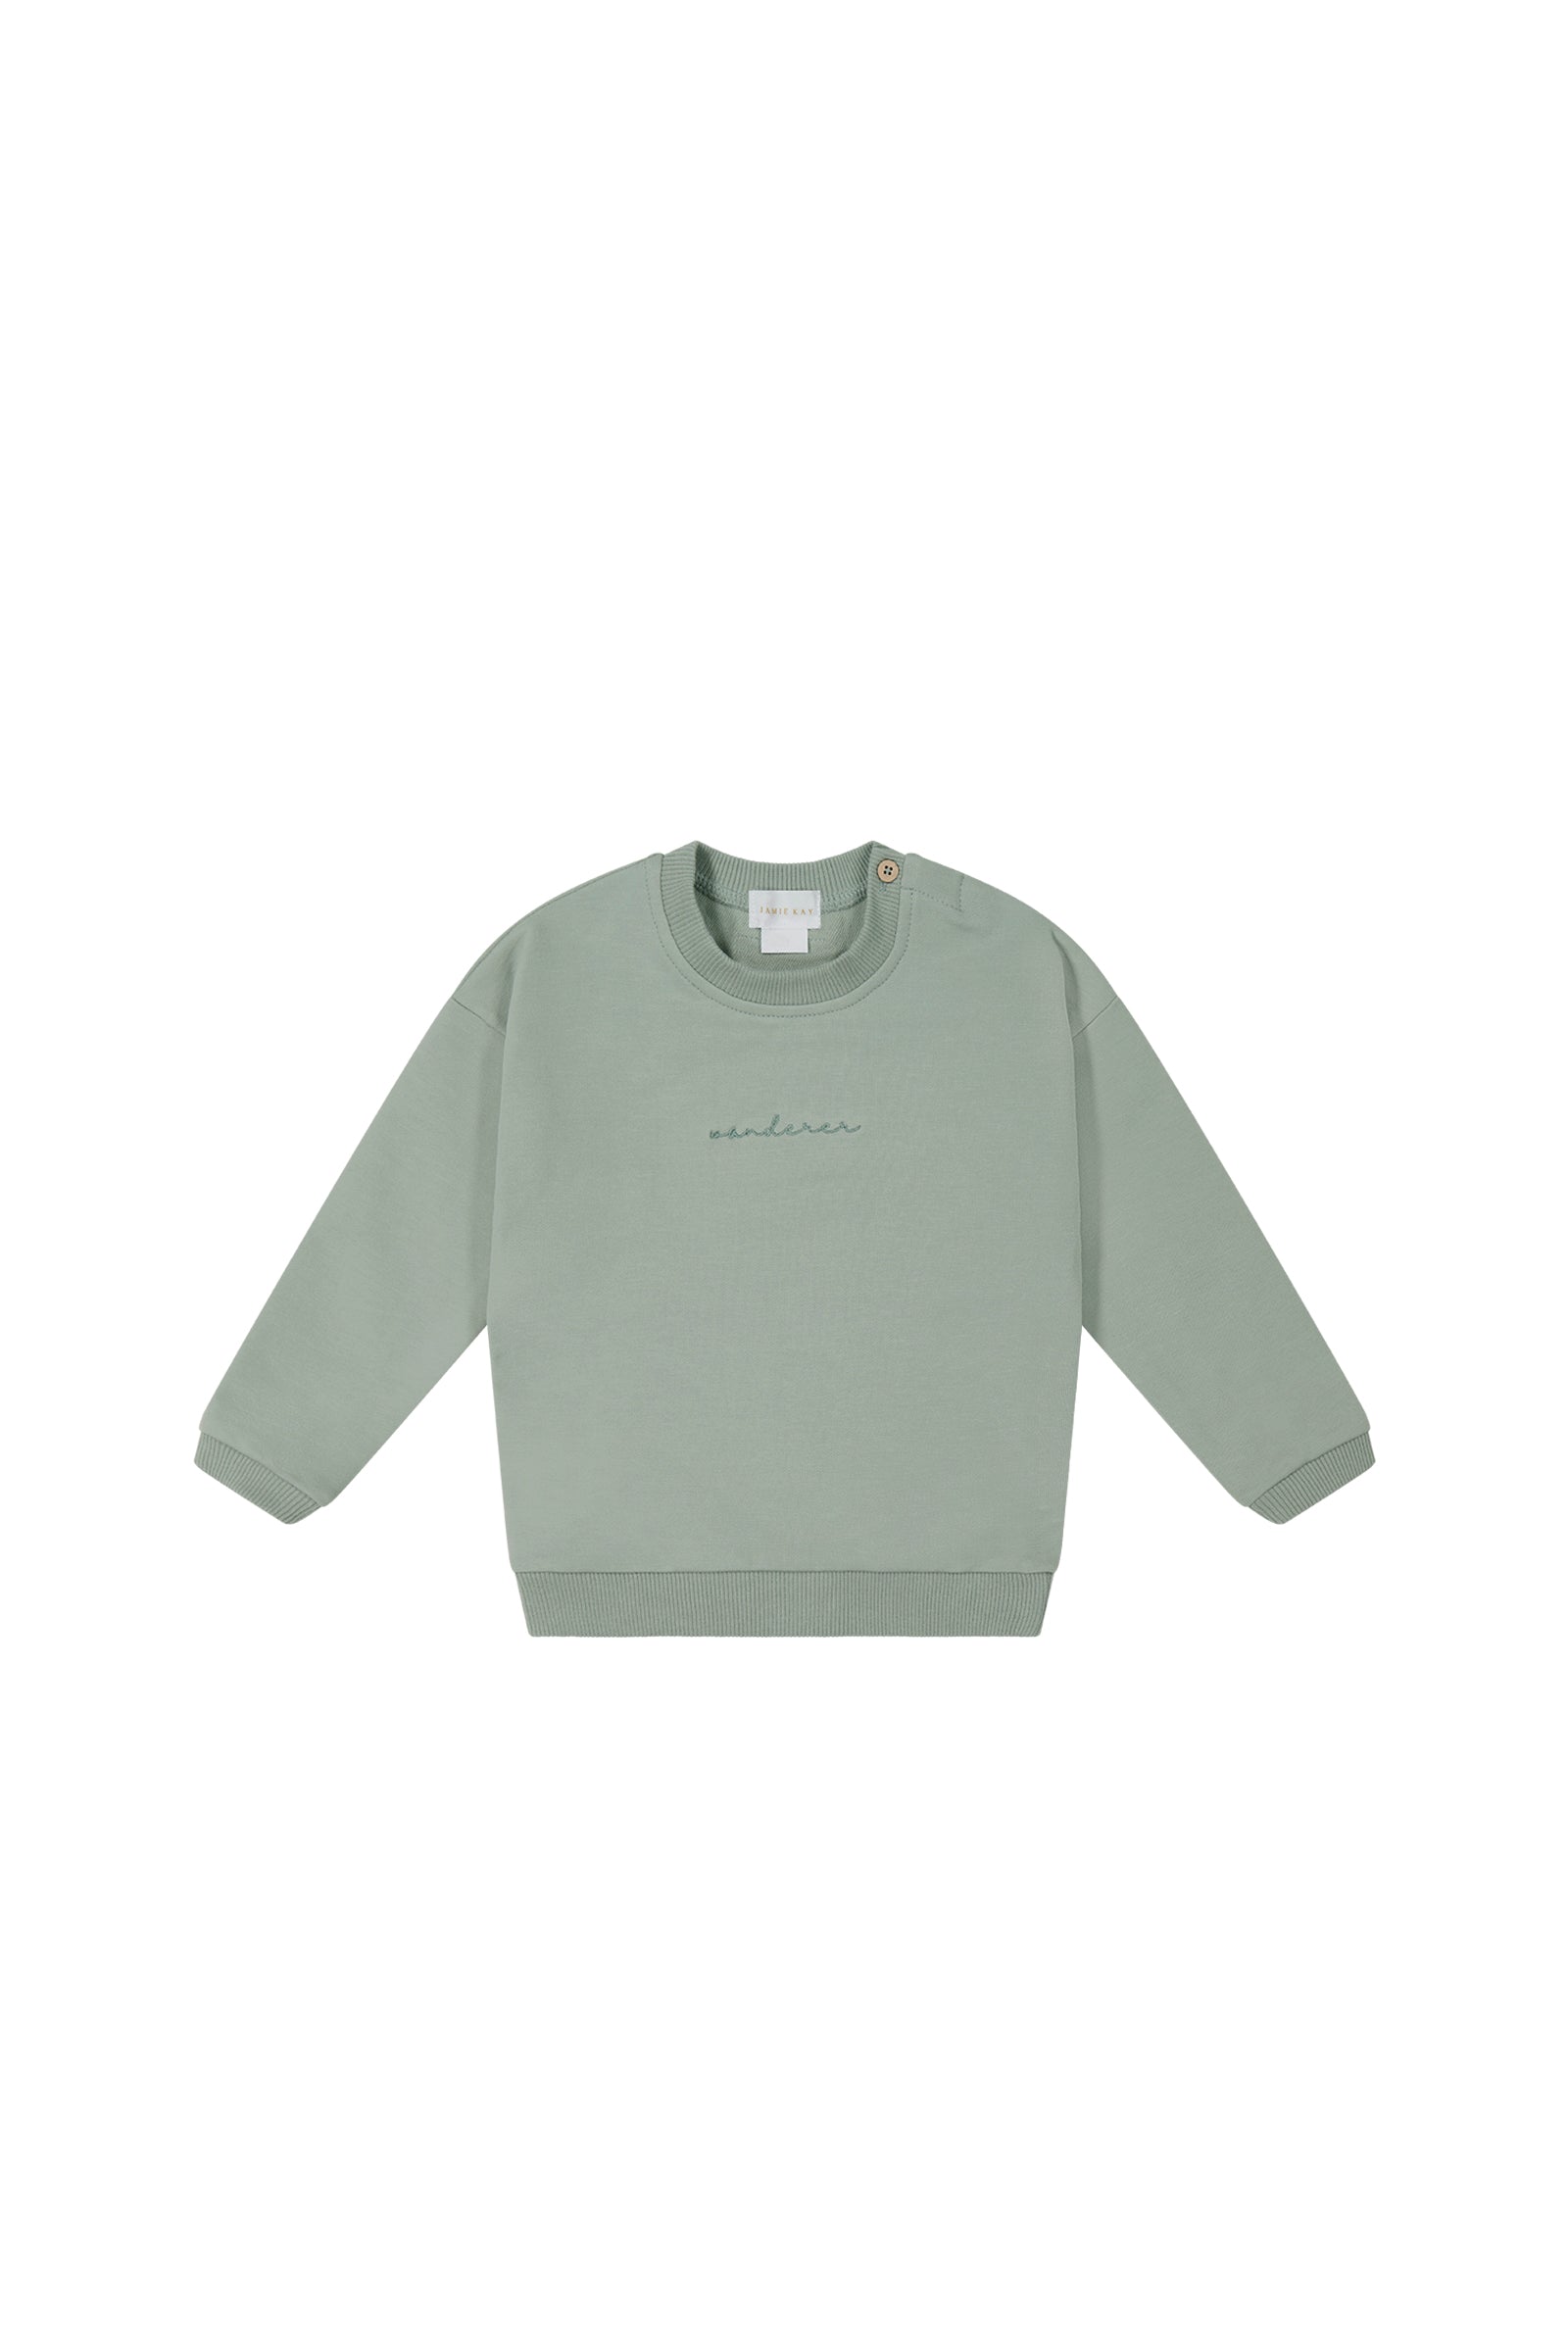 Organic Cotton Asher Sweatshirt - Beluga Kay – Jamie USA